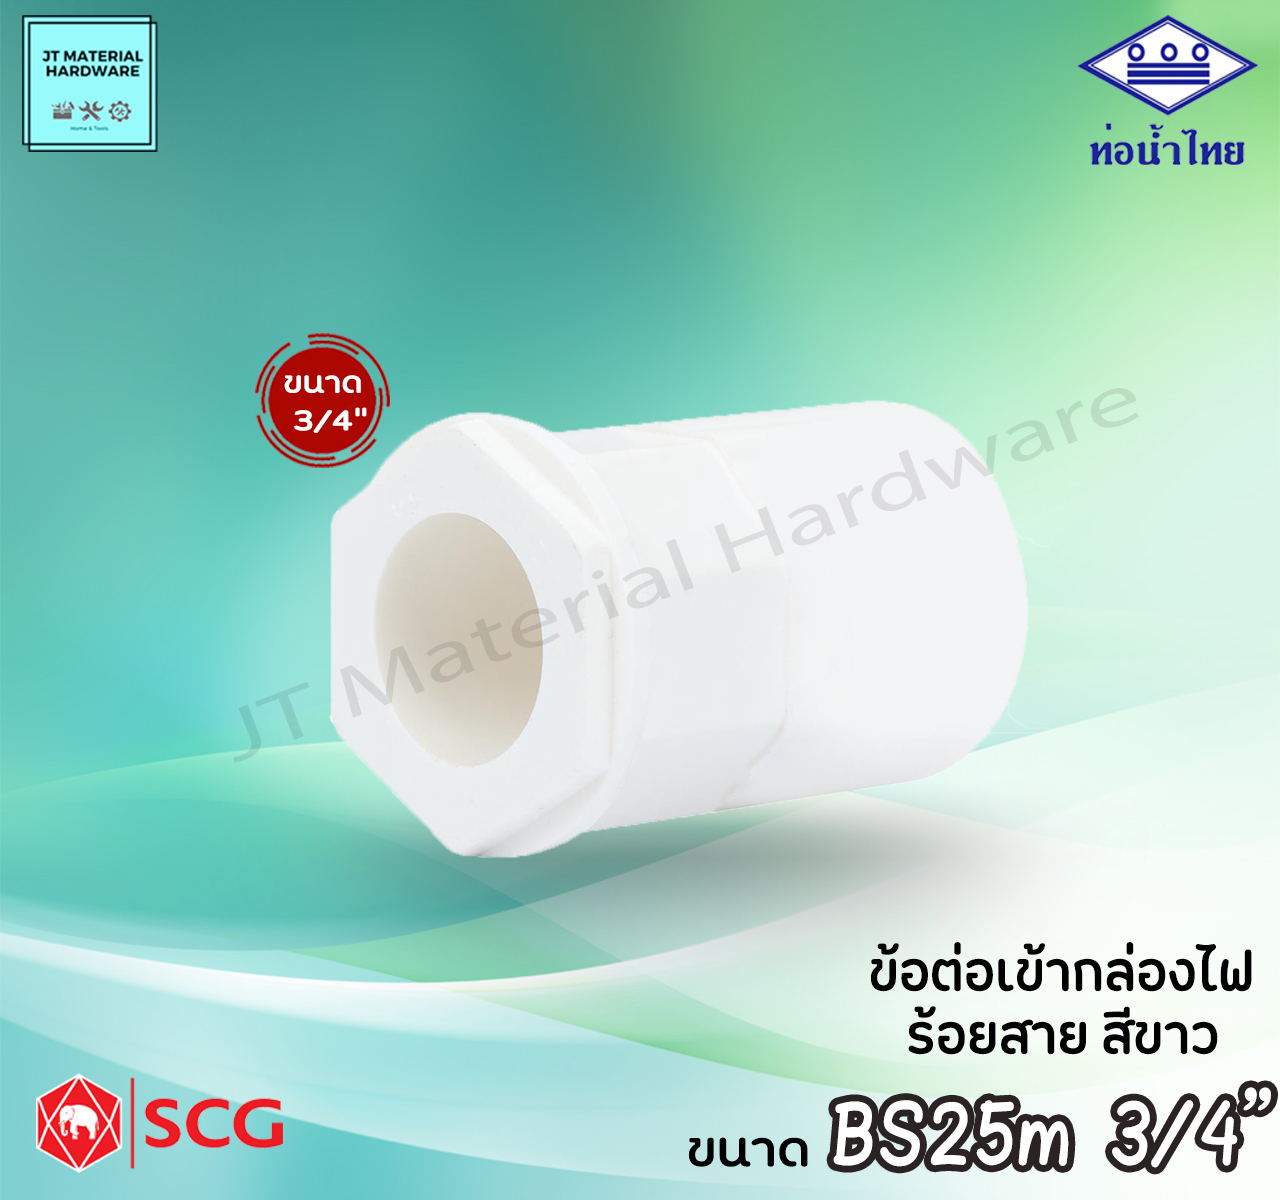 ท่อน้ำไทย SCG (ตราช้าง) ข้อต่อเข้ากล่องไฟ พีวีซี PVC ร้อยสาย ไฟฟ้า ขนาด BS16m3/8